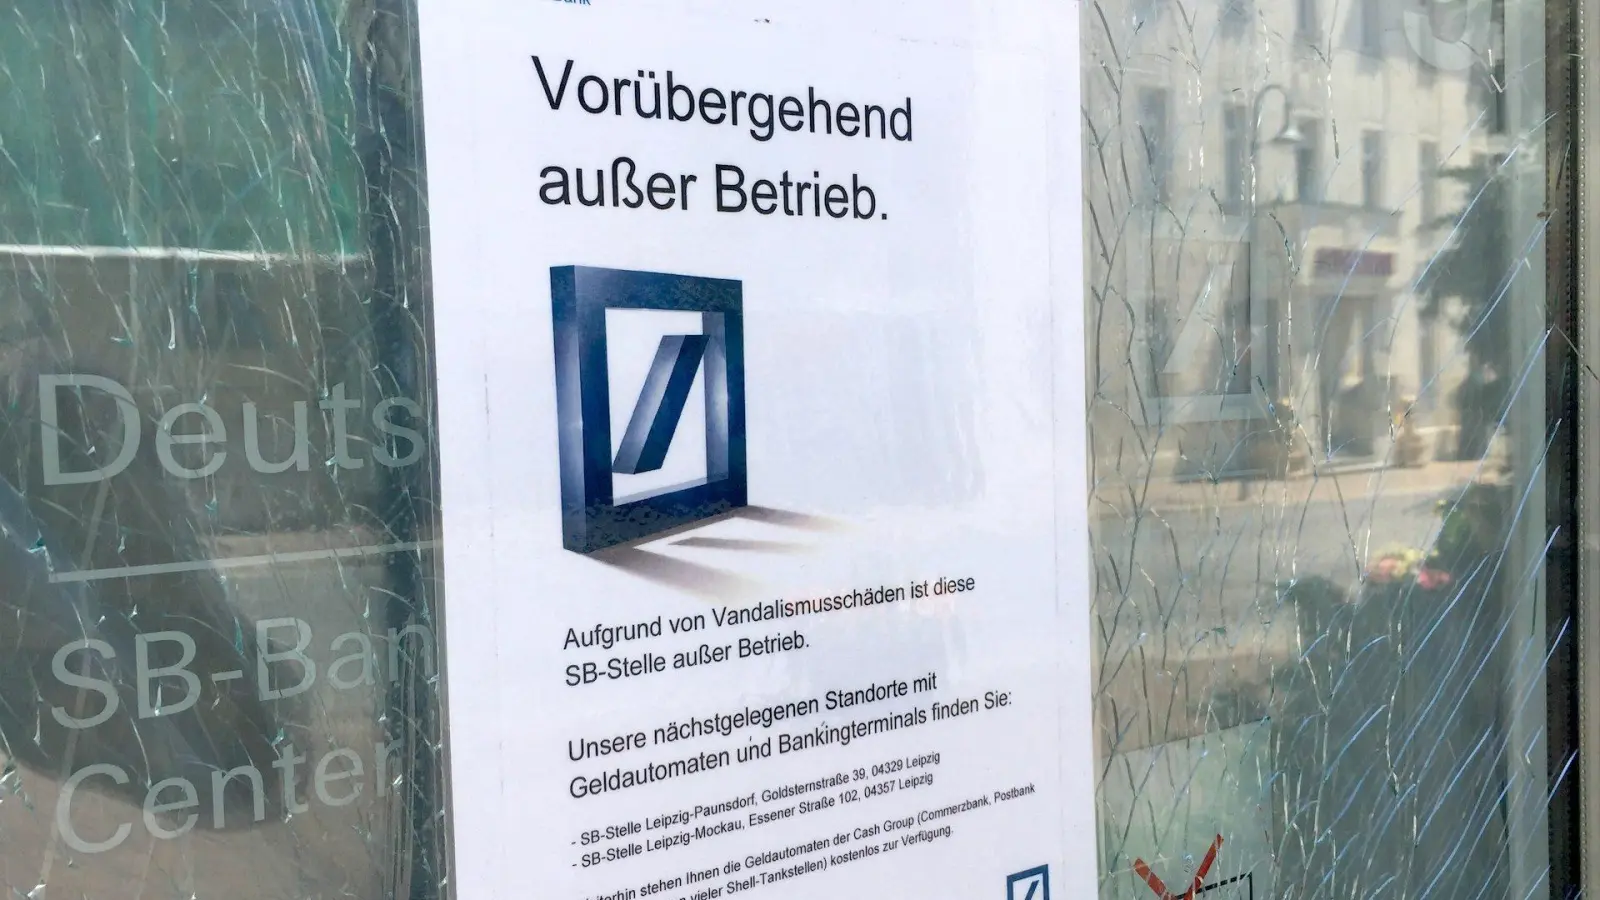 SB-Zone der Deutschen Bank in Taucha bleibt weiterhin gesperrt (Foto: taucha-kompakt.de)